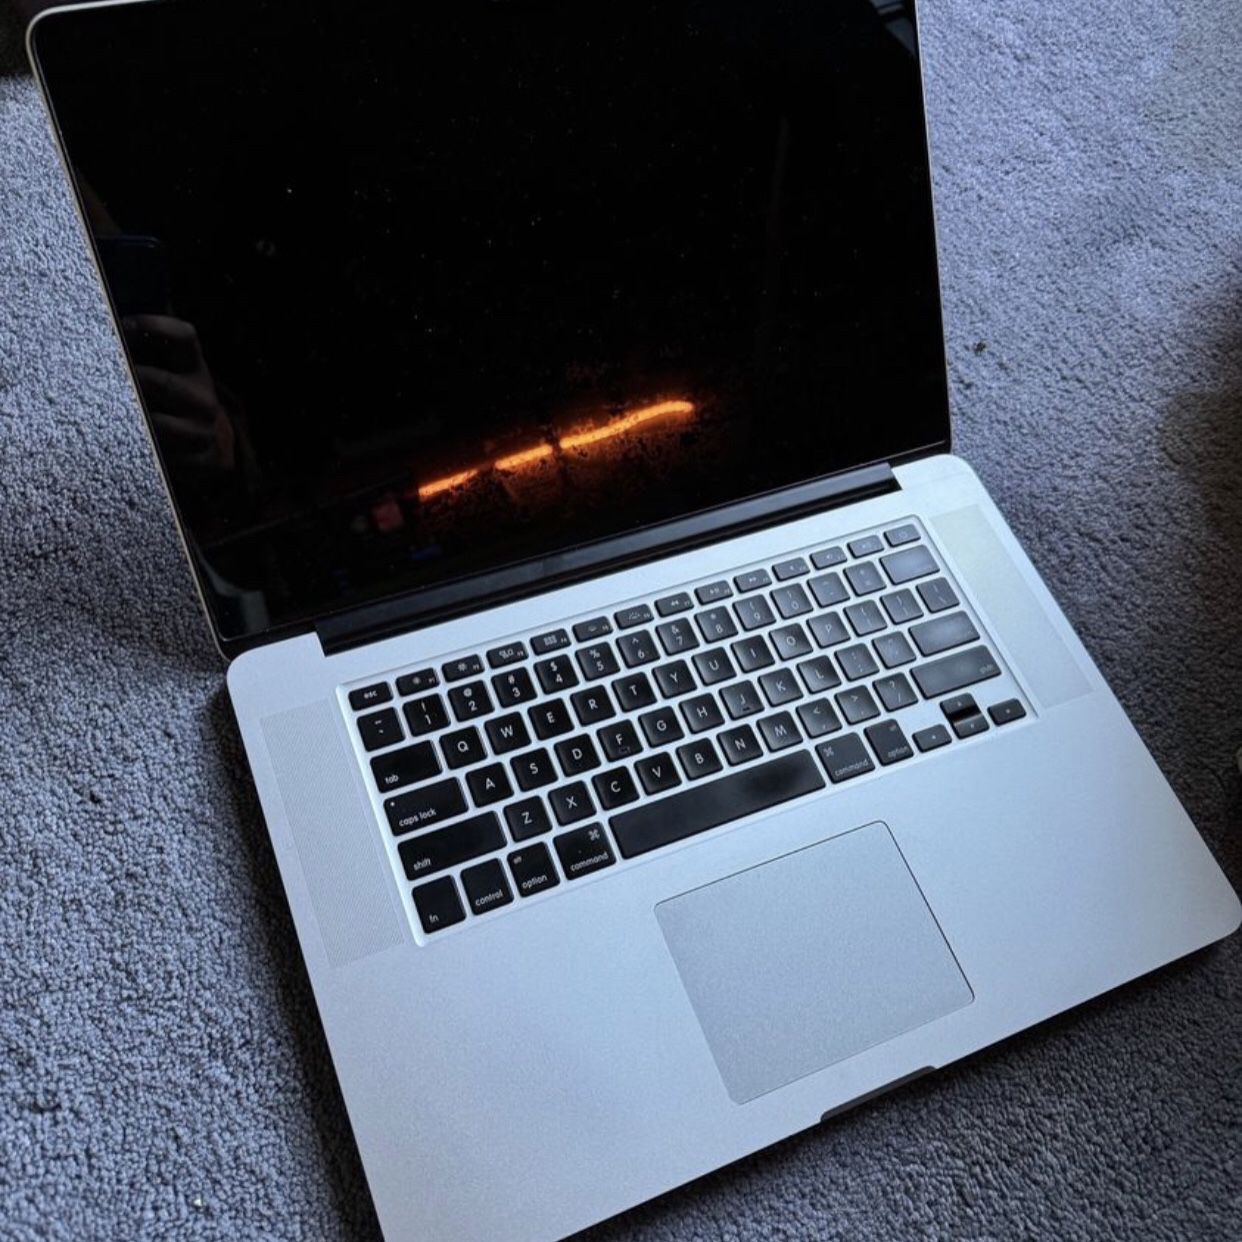 MacBook Pro 13 Inch Unlocked 500gb Storage